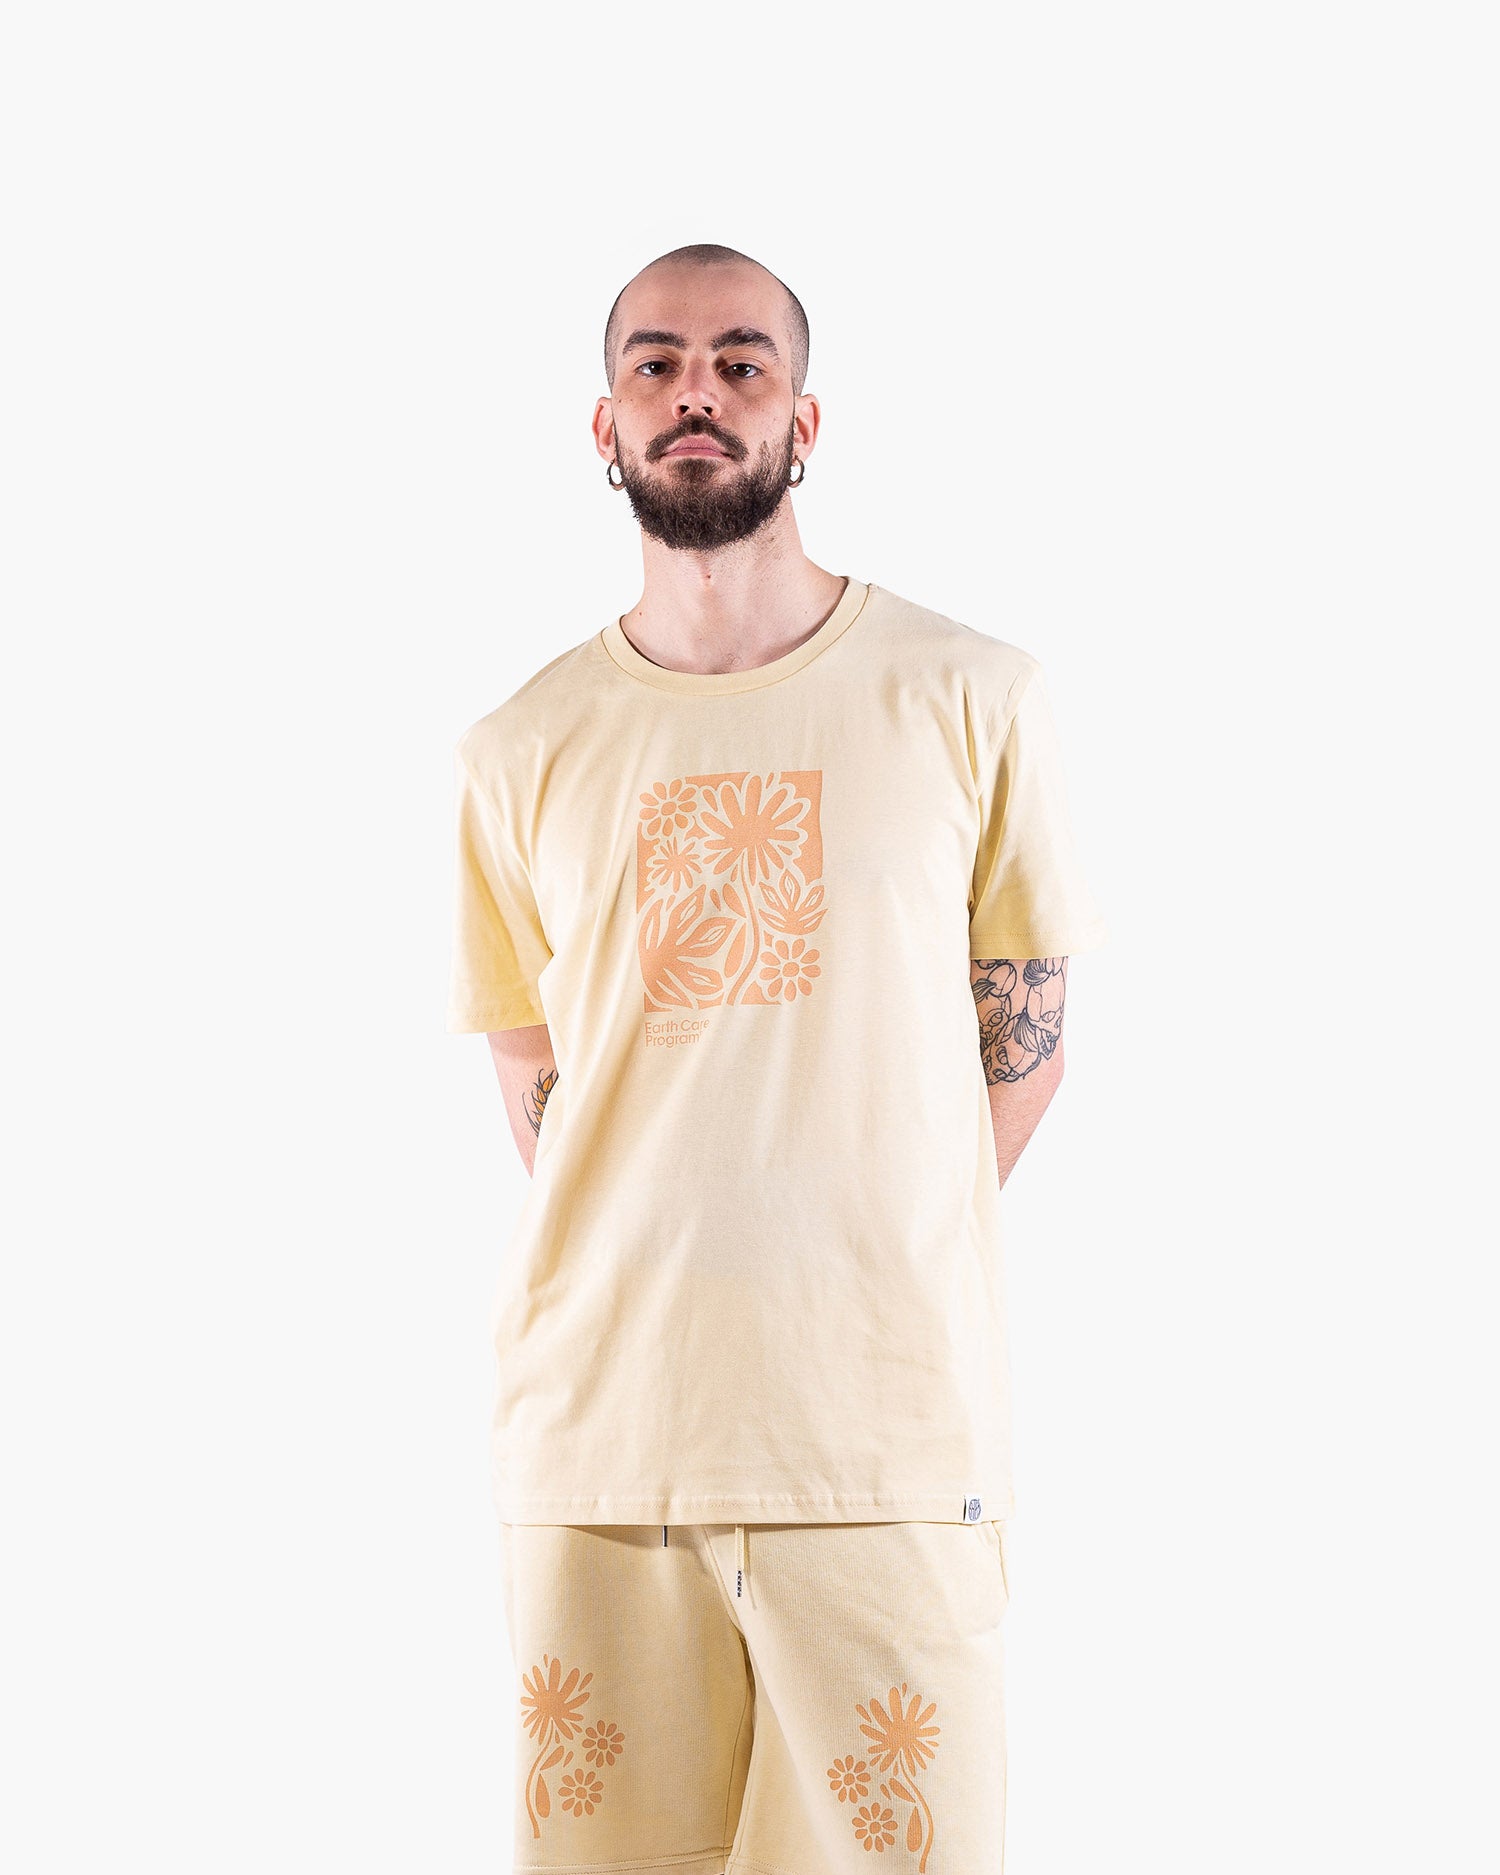 Anthem Brand T-shirt Uomo Cotone Organico Abbigliamento Streetwear Made in Italy Sostenibile